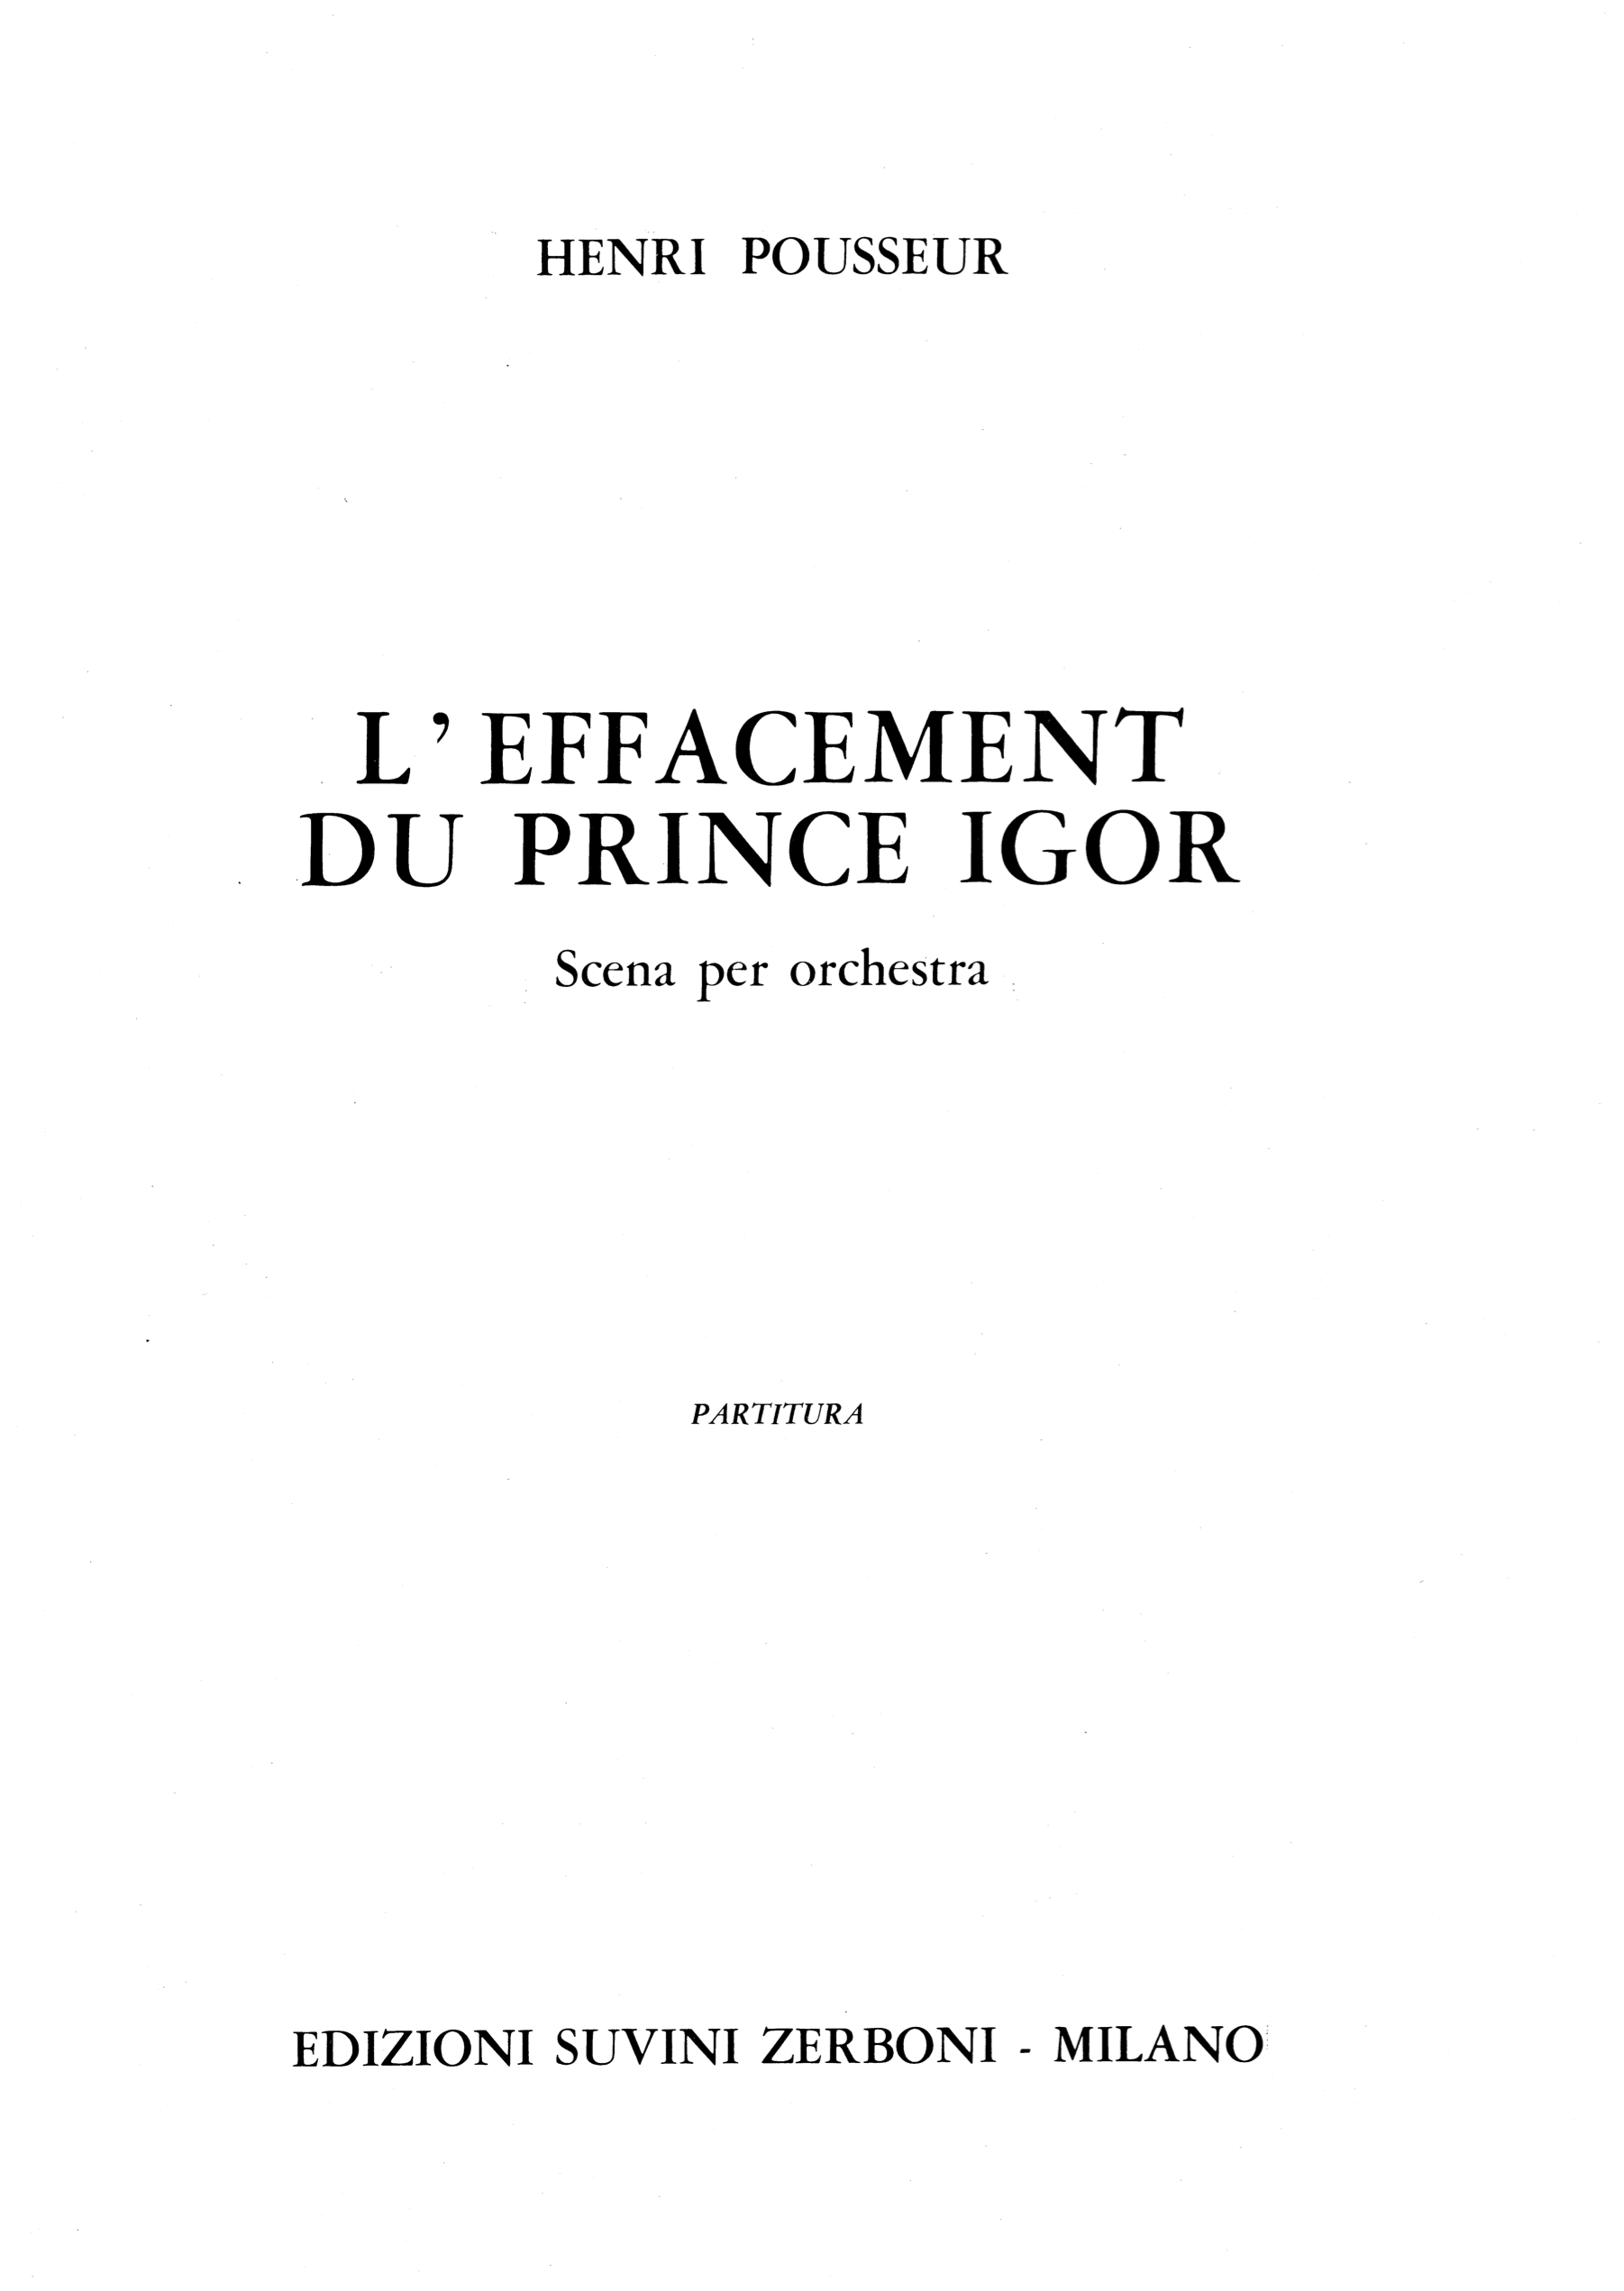 L effacement du prince Igor_Pousseur 1